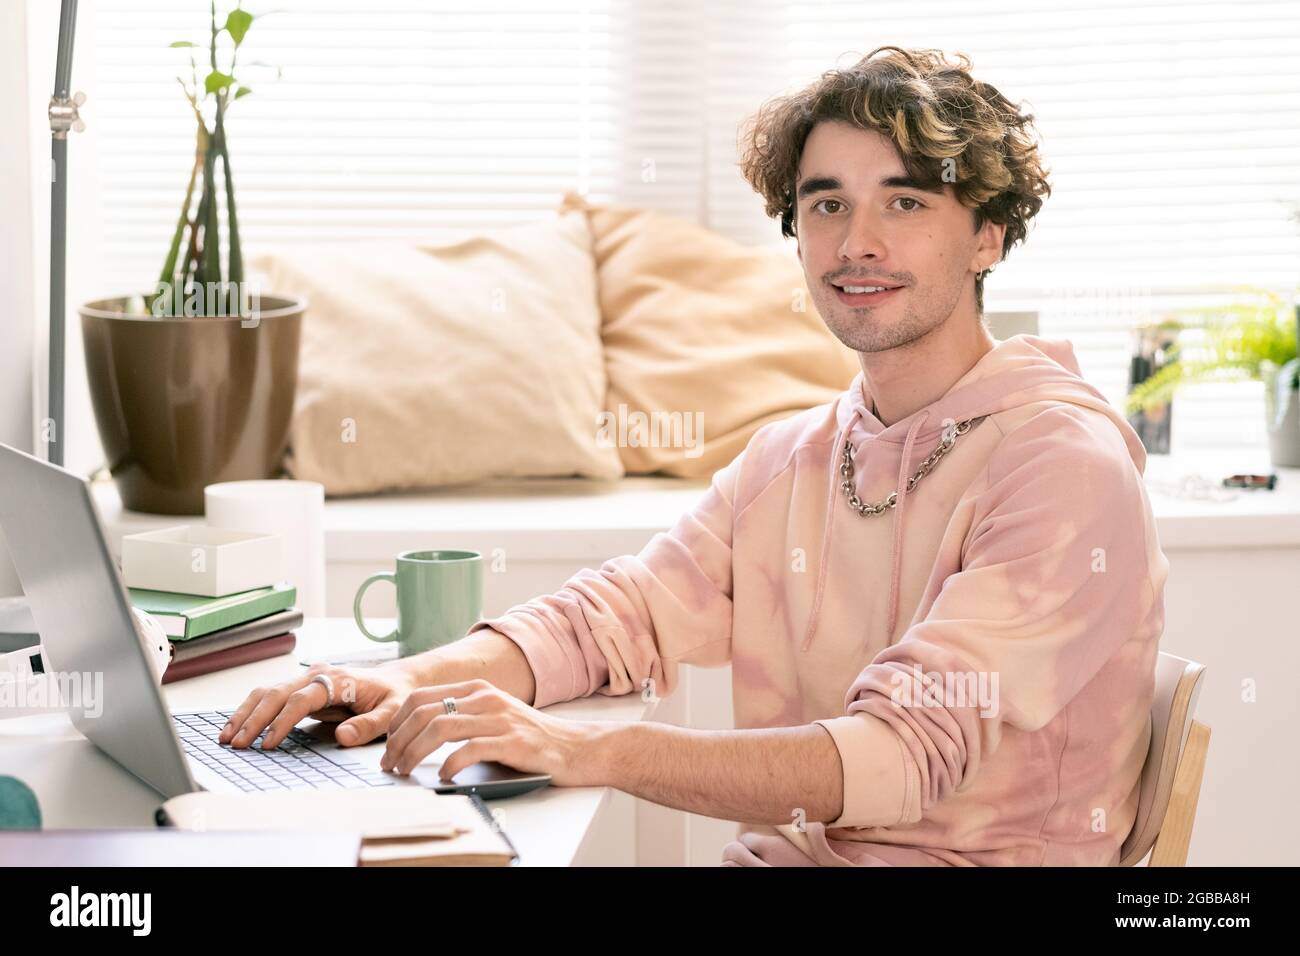 Fröhlicher Teenager mit Laptop, der während des Netzwerks mit einem Lächeln auf die Kamera blickt Stockfoto